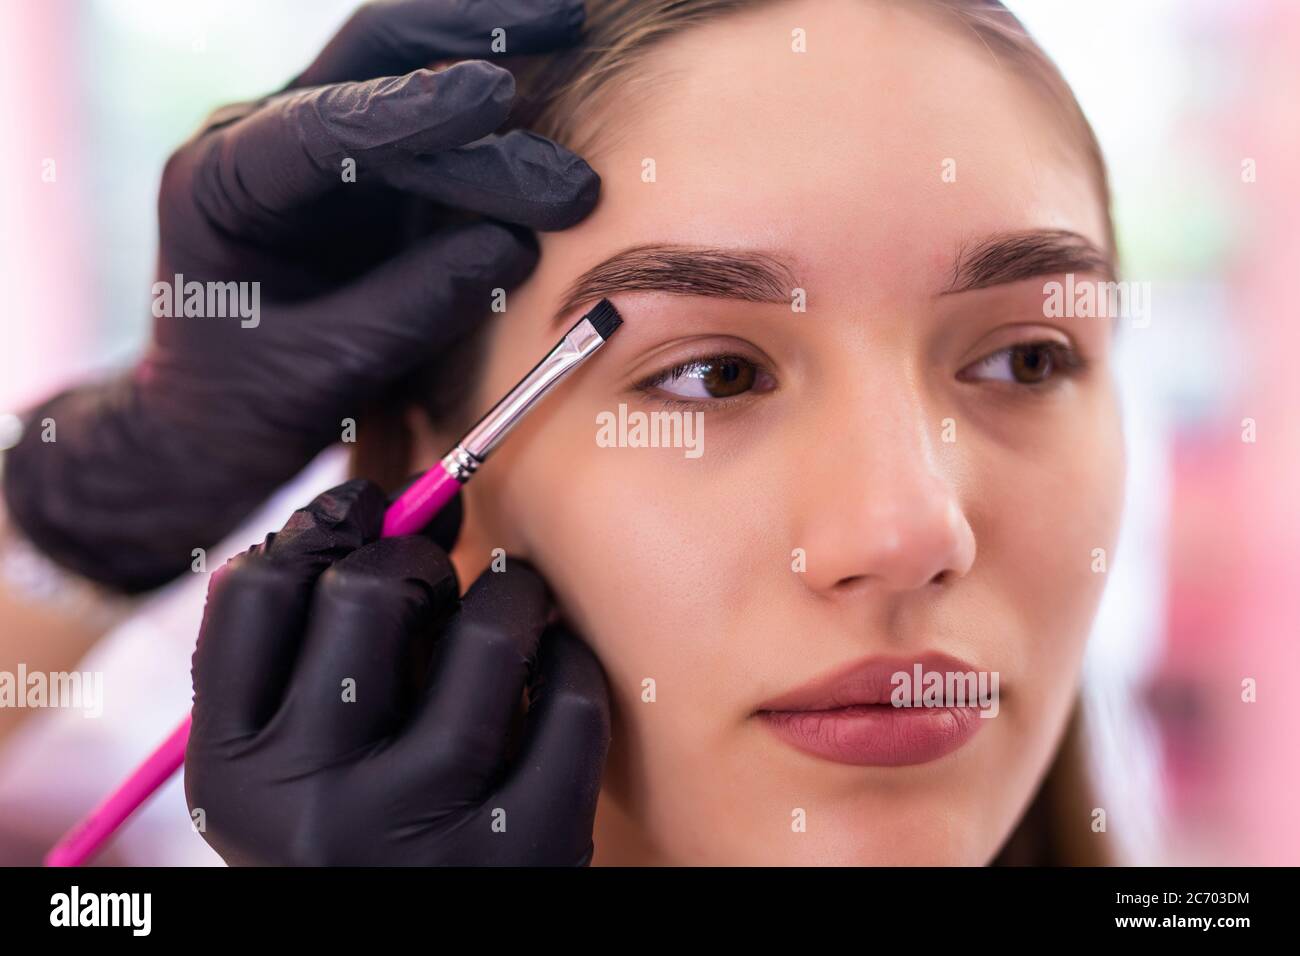 Schöne junge Frau bekommt Augenbraue Korrektur Verfahren. Junge Frau malt ihre Augenbrauen in Beauty Salon. Stockfoto